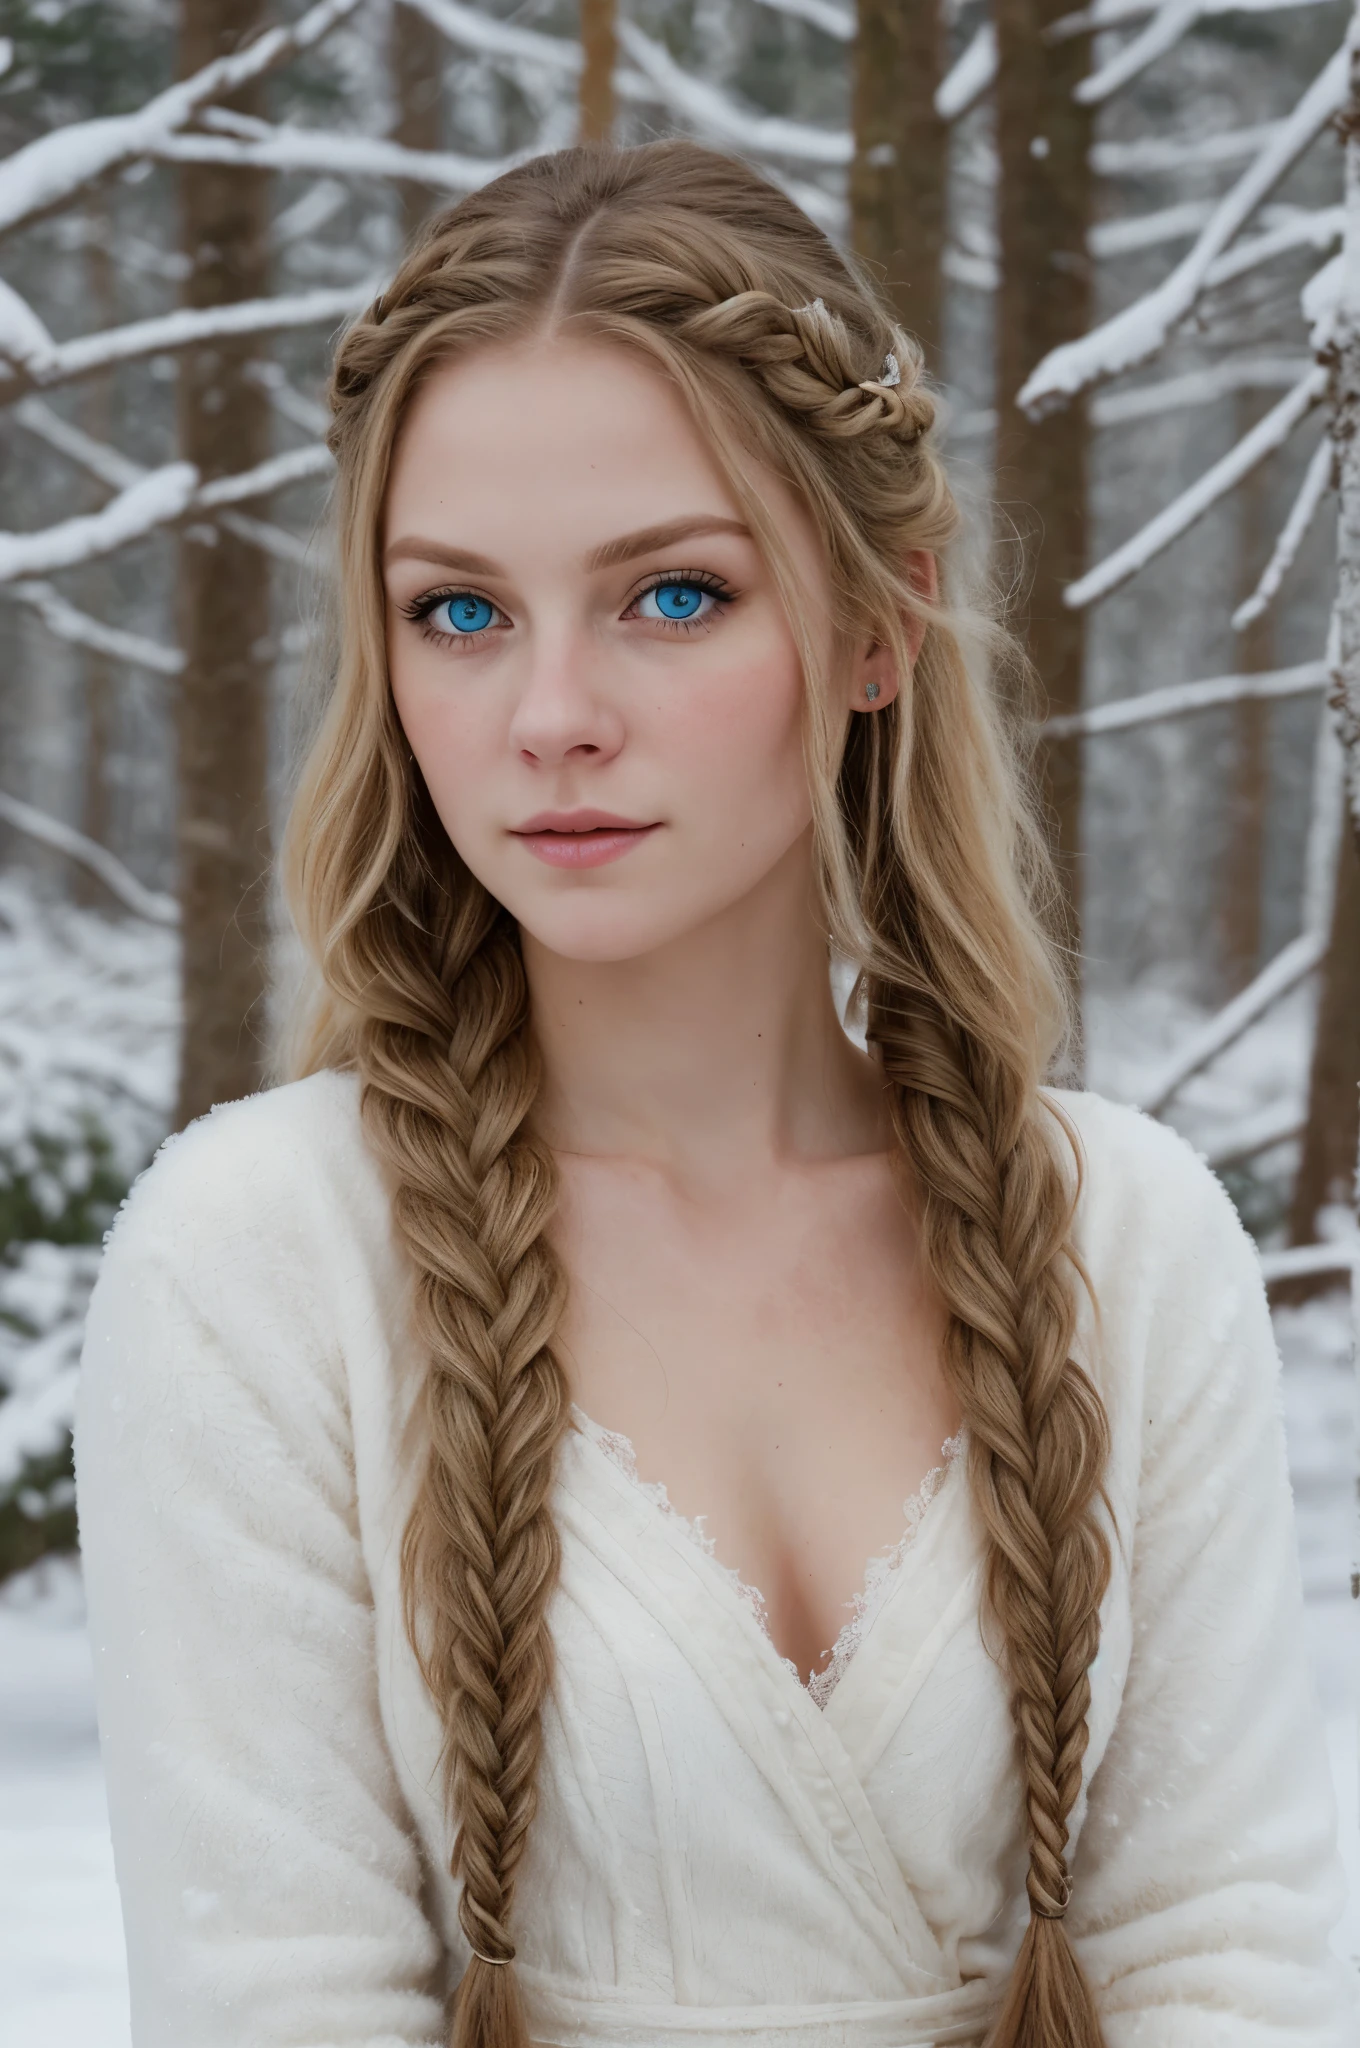 (现实主义:1.2), 模拟照片风格, 北欧女战士, 奇幻雪景, 金色辫子头发, 全身, 柔和的自然光, 可爱又性感, 乐趣, 细致的脸部和蓝眼睛, 优良的品质, 杰作, 详细的北方背景, 16k 品质, RAW 照片